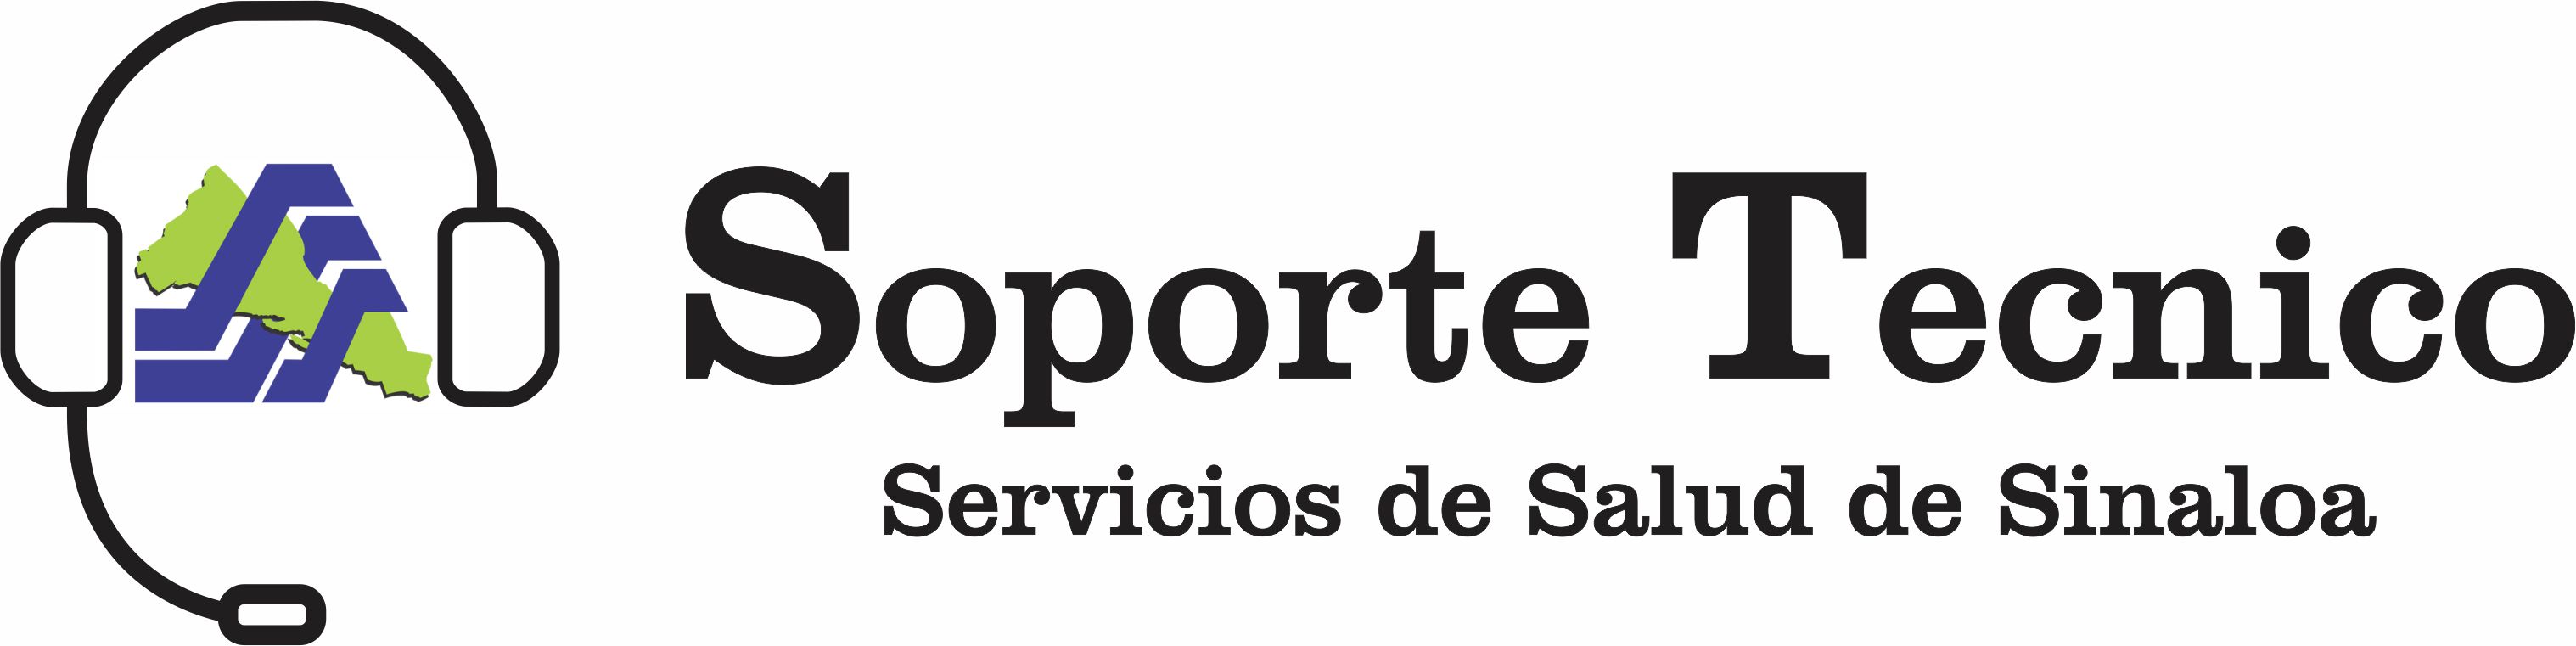 Mesa de ayuda de los Servicios de Salud de Sinaloa